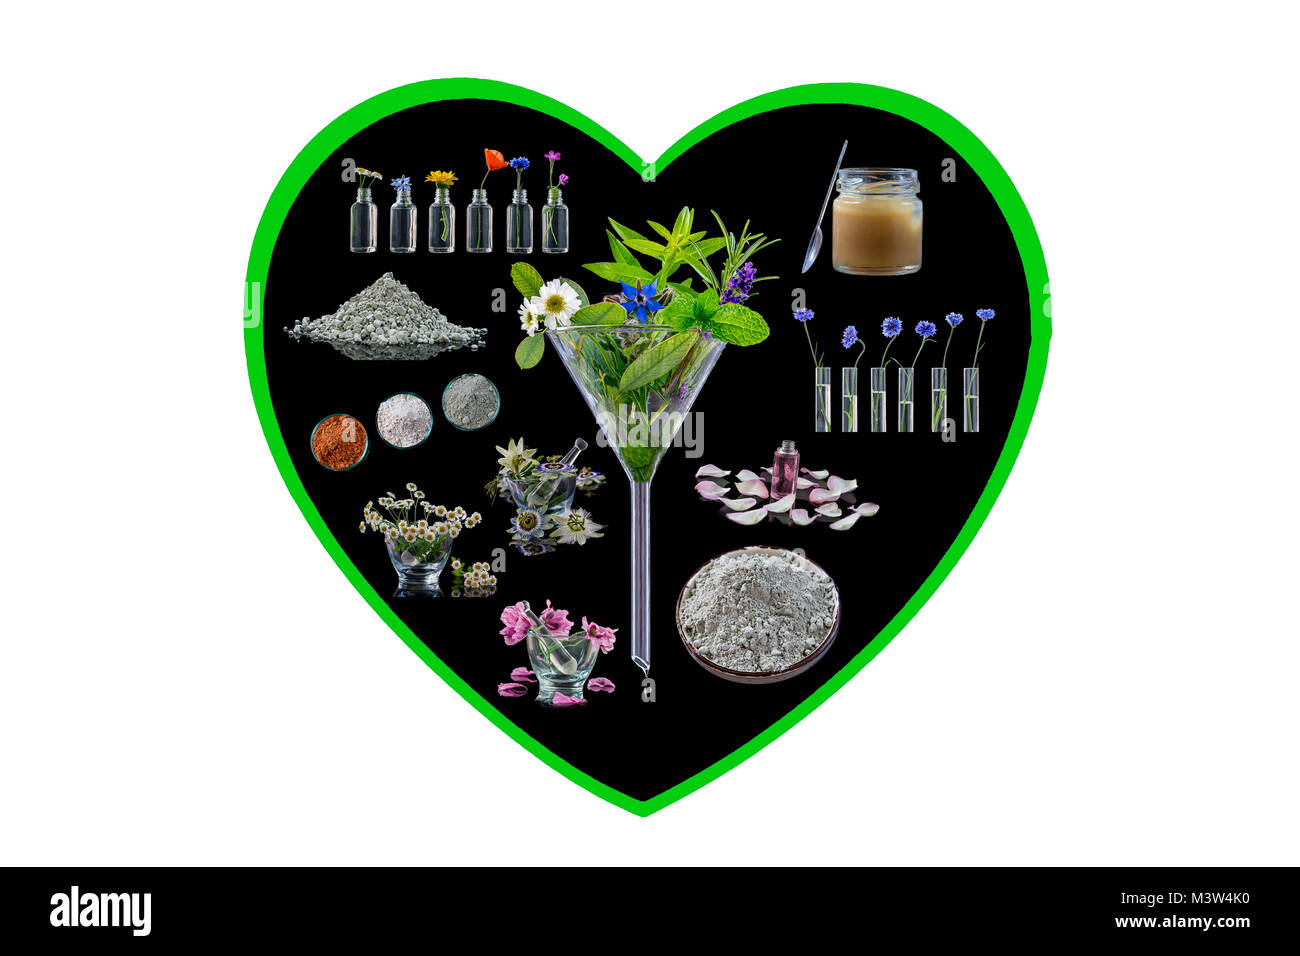 Immagine concettuale : Alternative medicine a base di erbe in sfondo nero in forma di cuore su bianco medicina di erbe concept Foto Stock